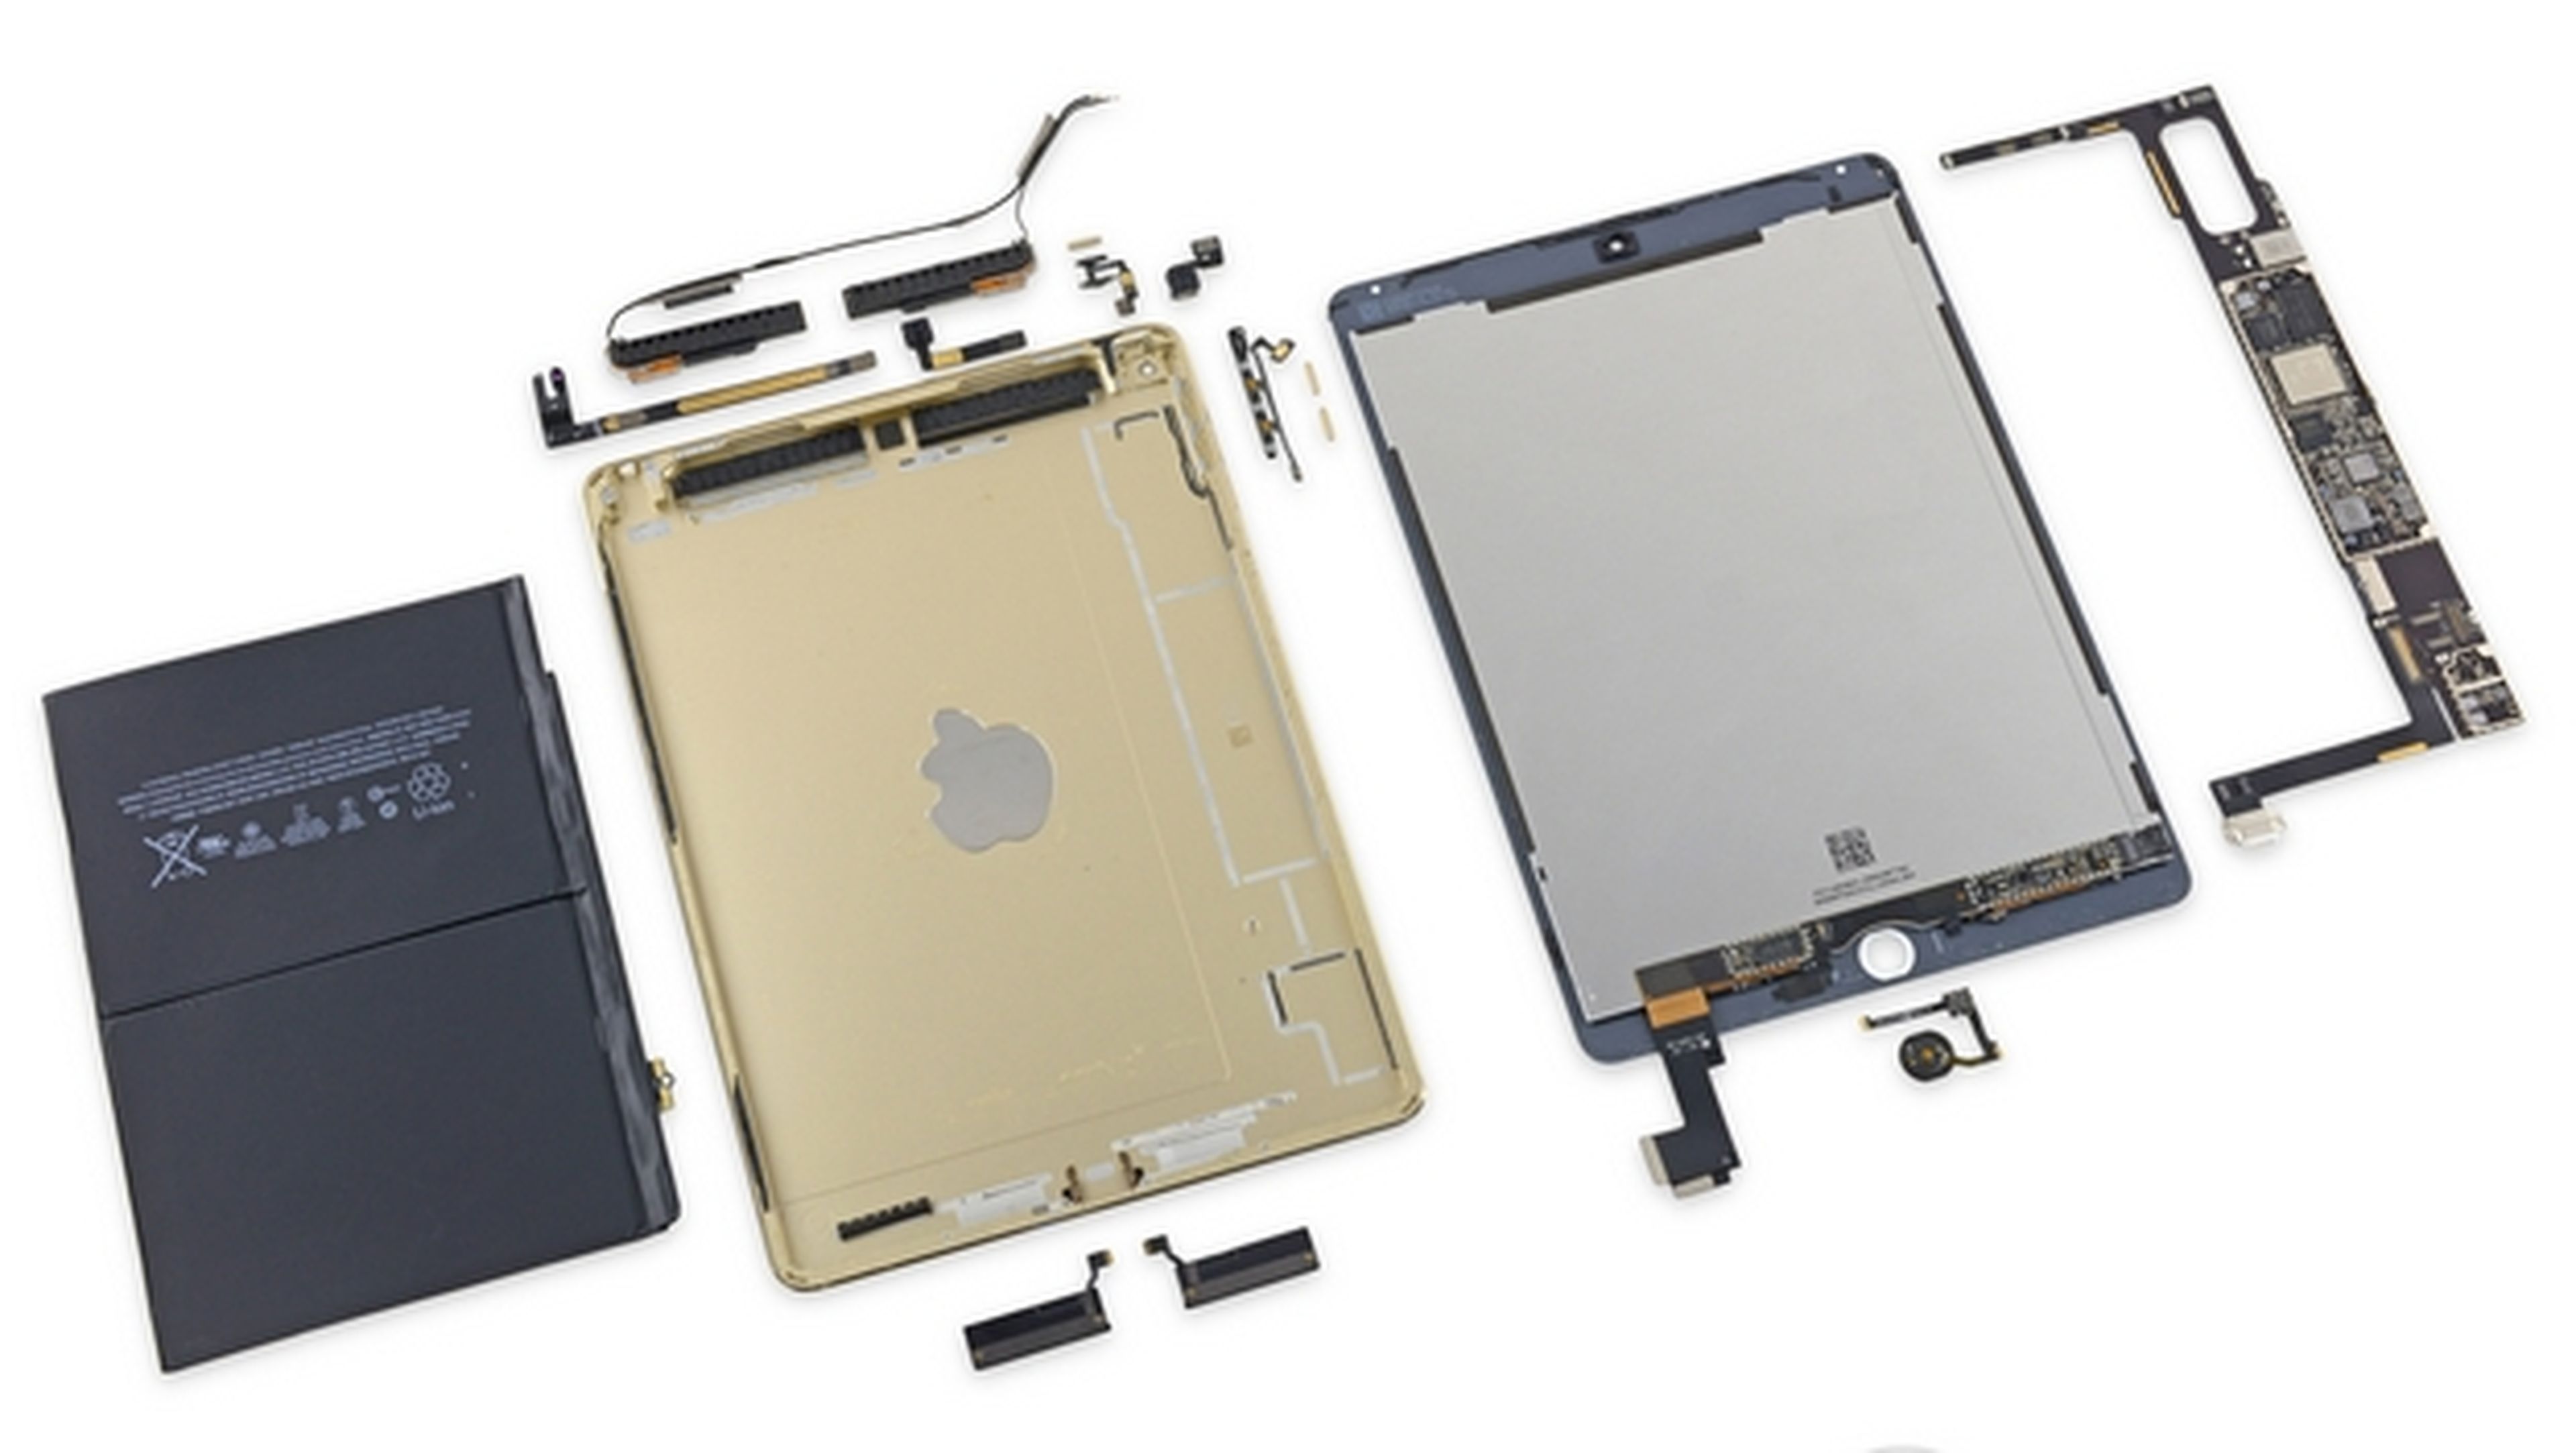 iPad Air 2 tiene menos batería y NFC sin antena según iFixit.